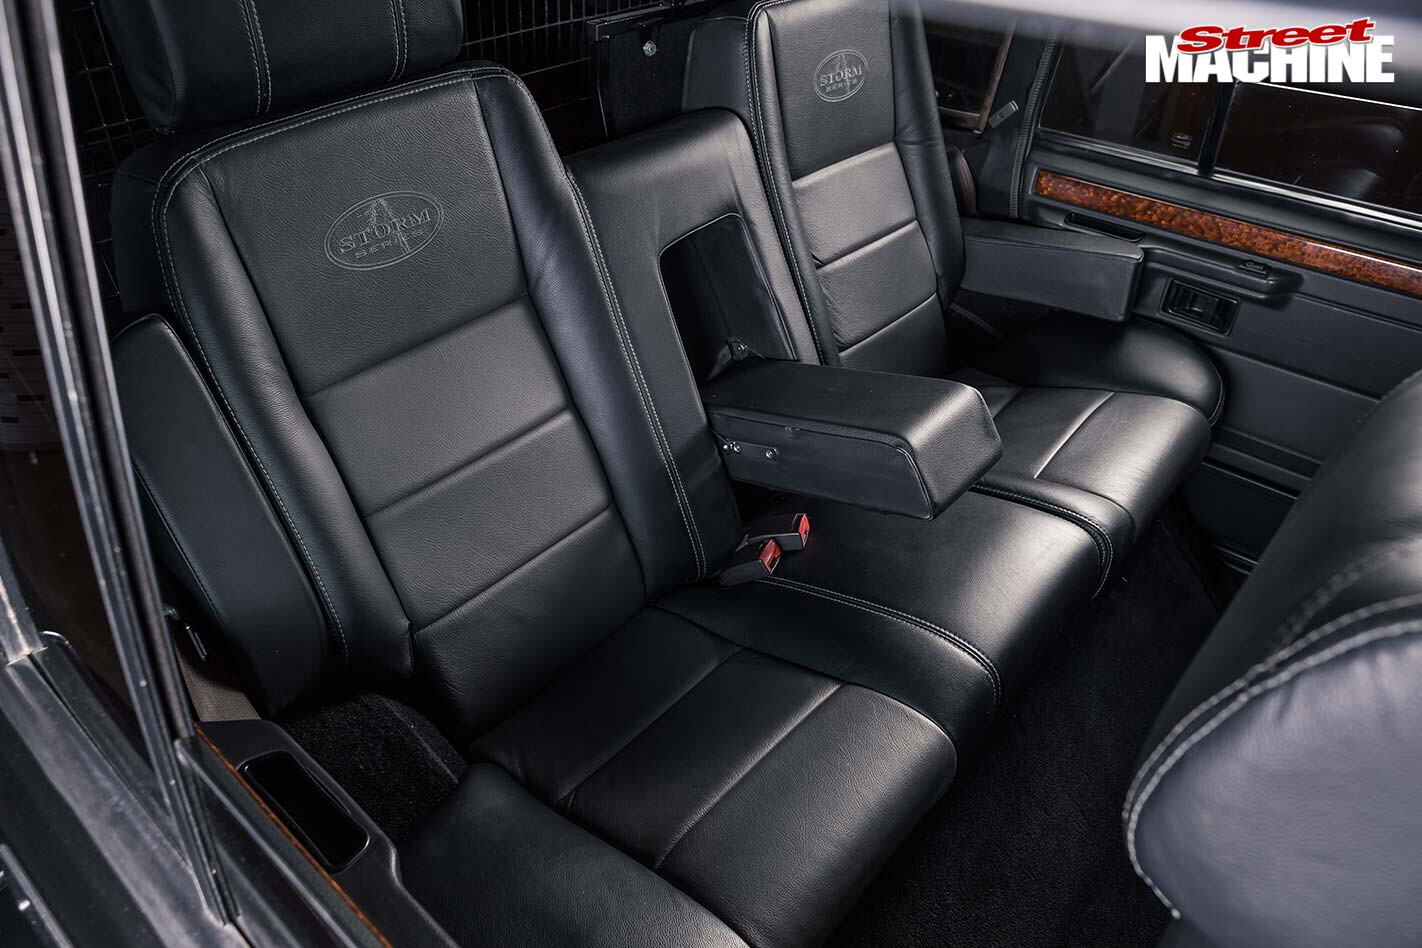 Range Rover rear seats